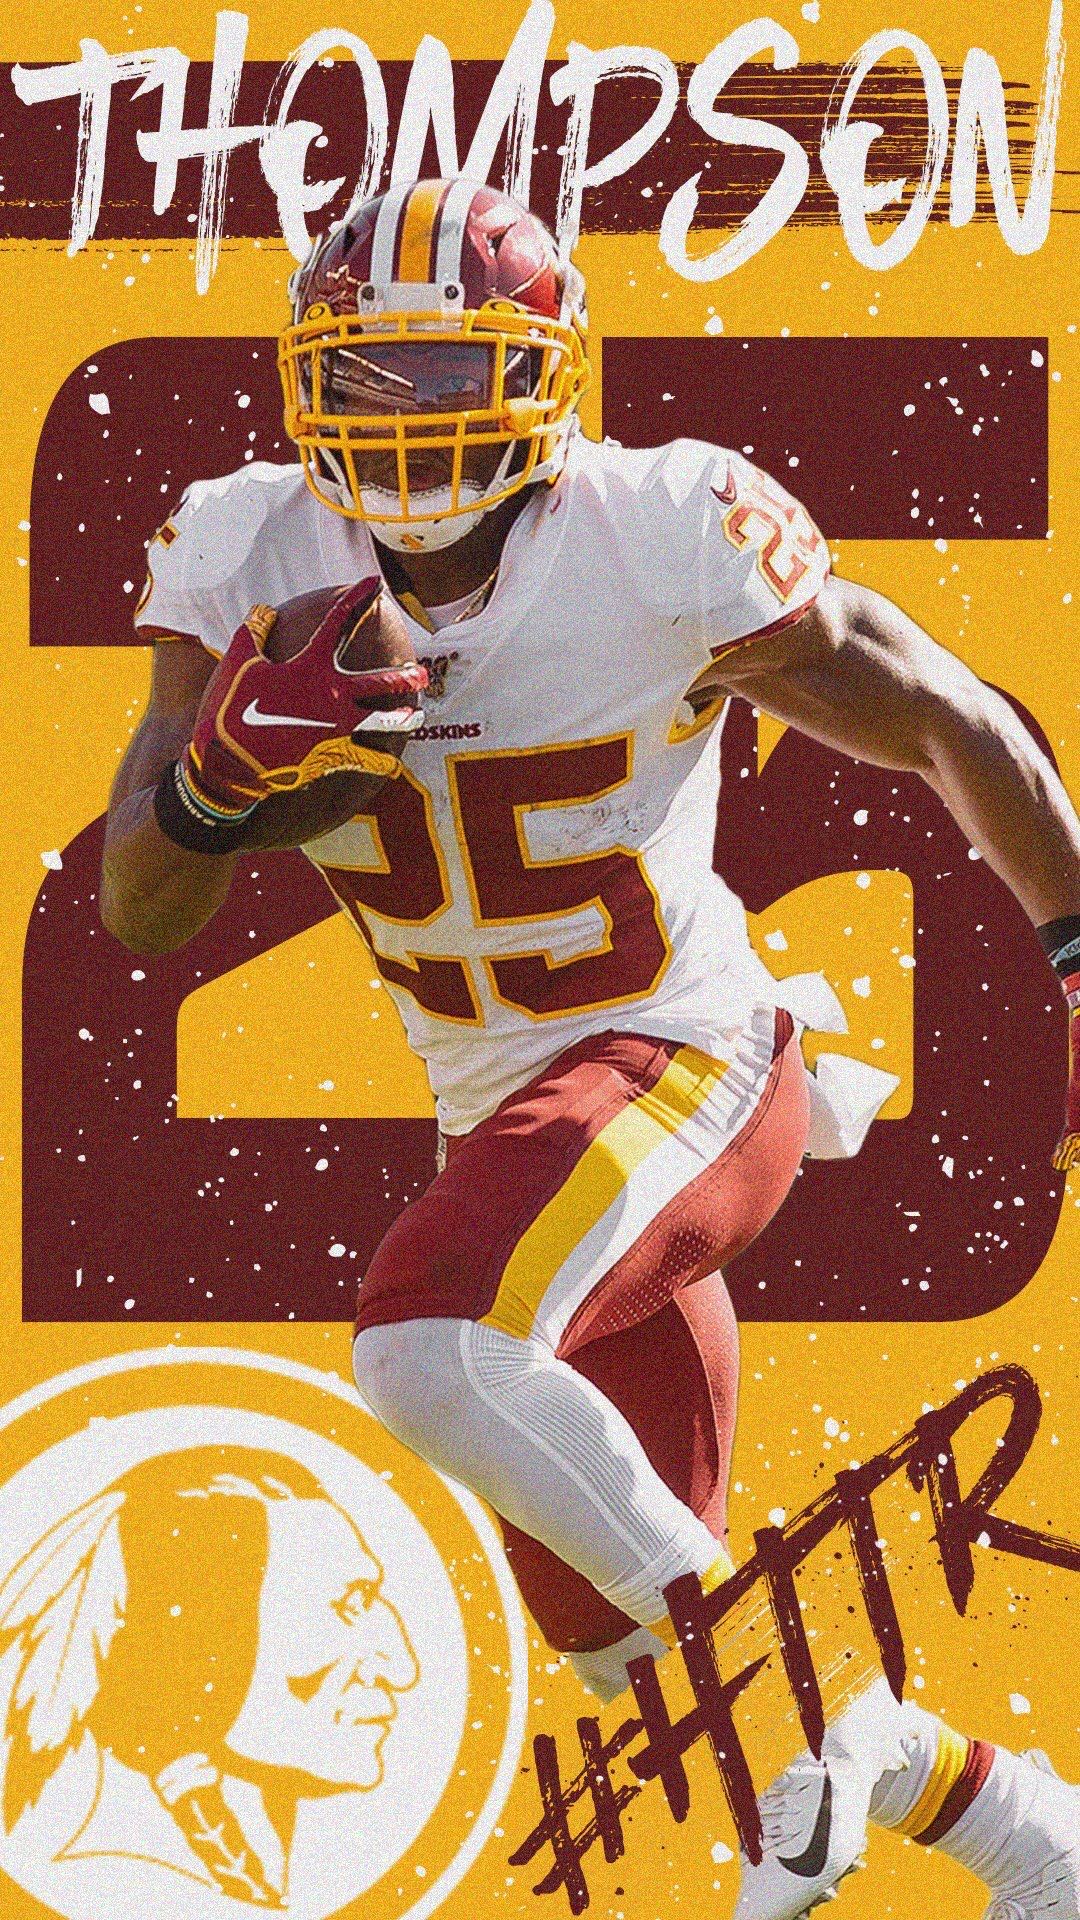 Washington Redskins - HD Wallpaper 